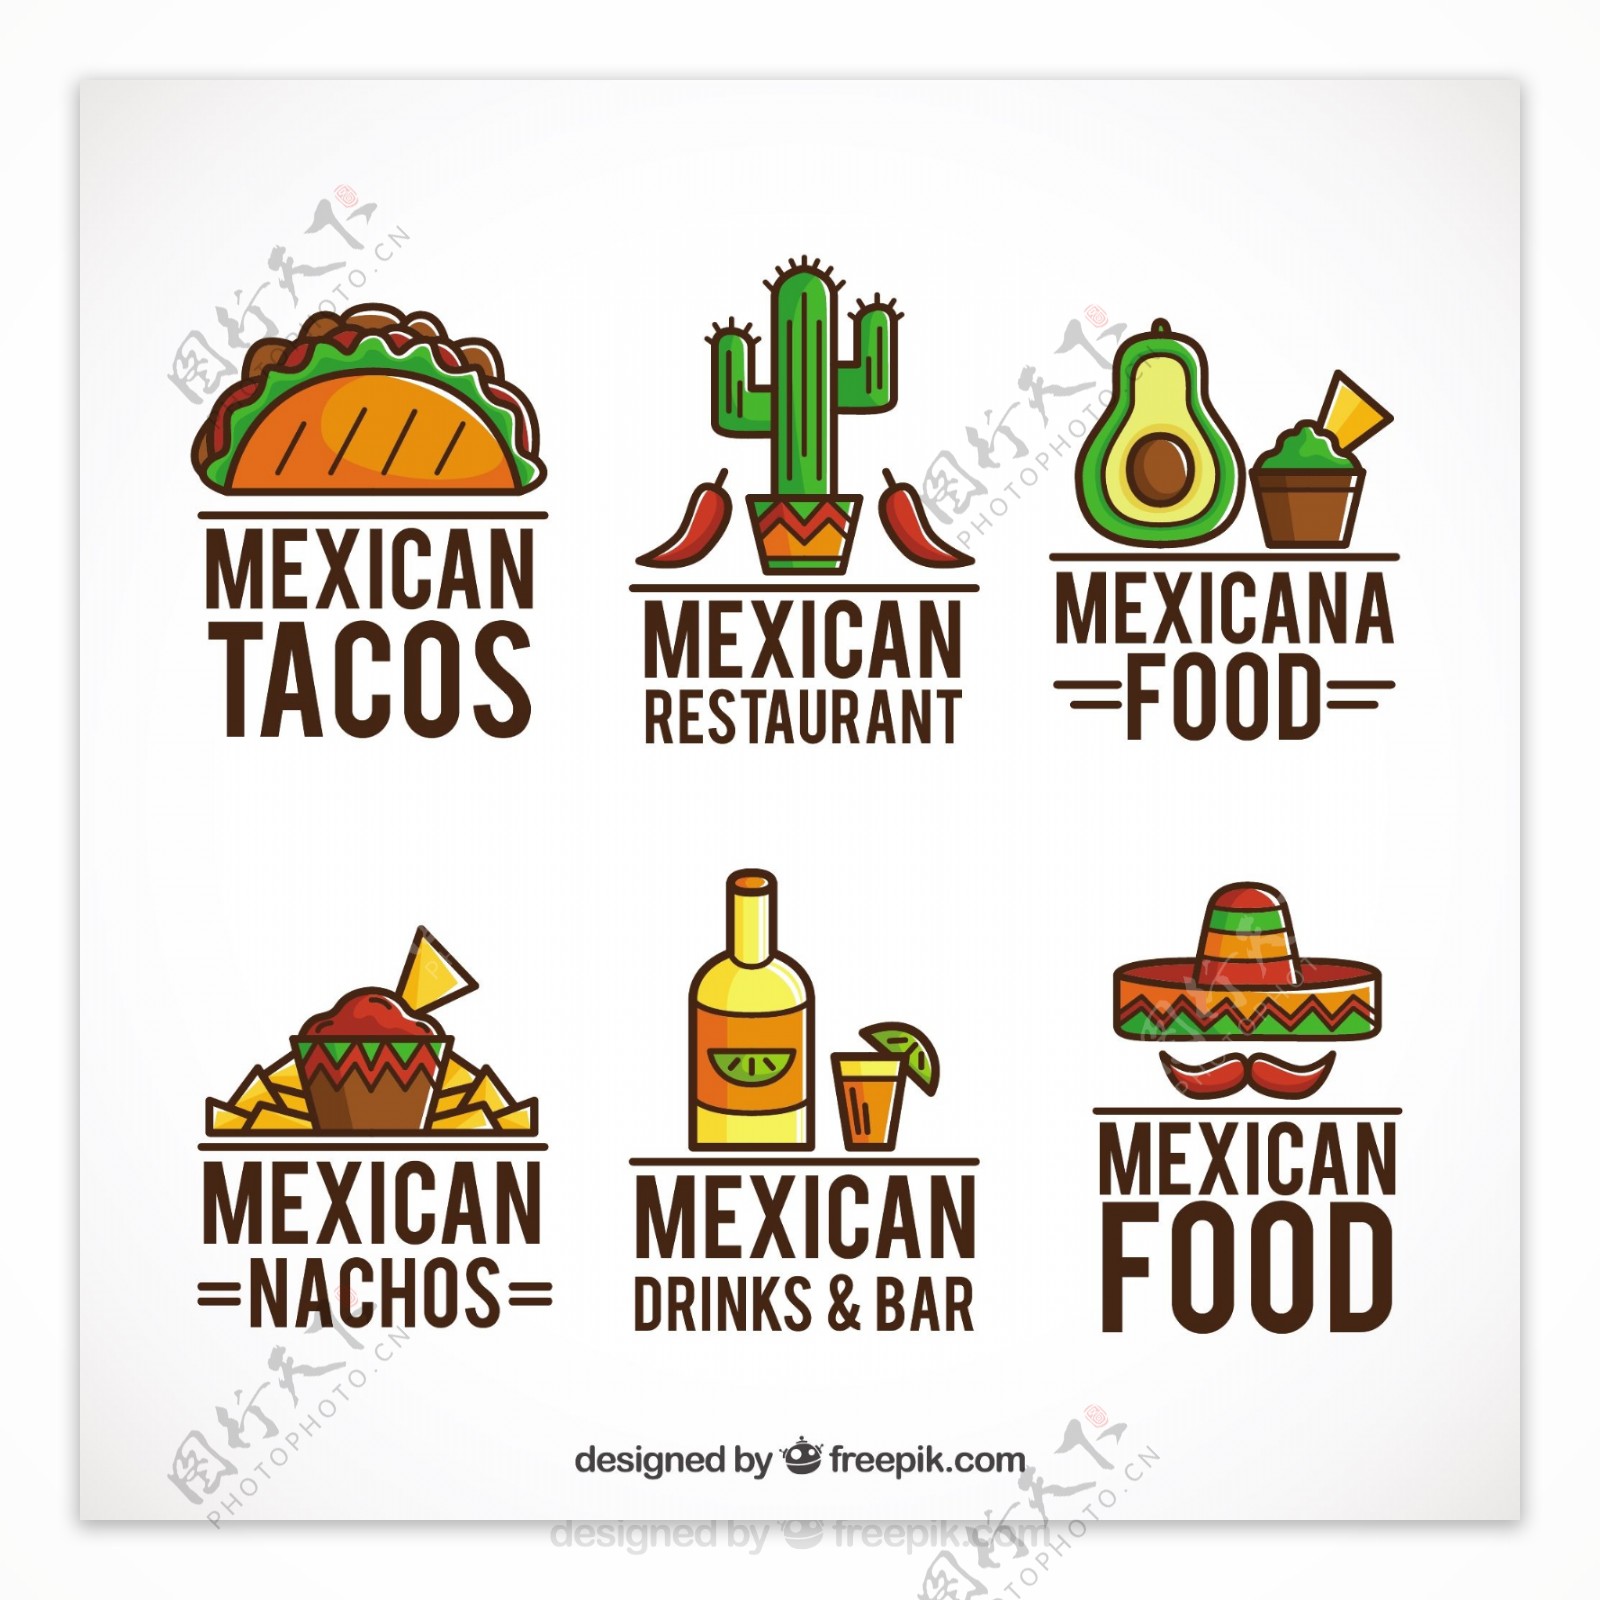 墨西哥食品标识集合与概要